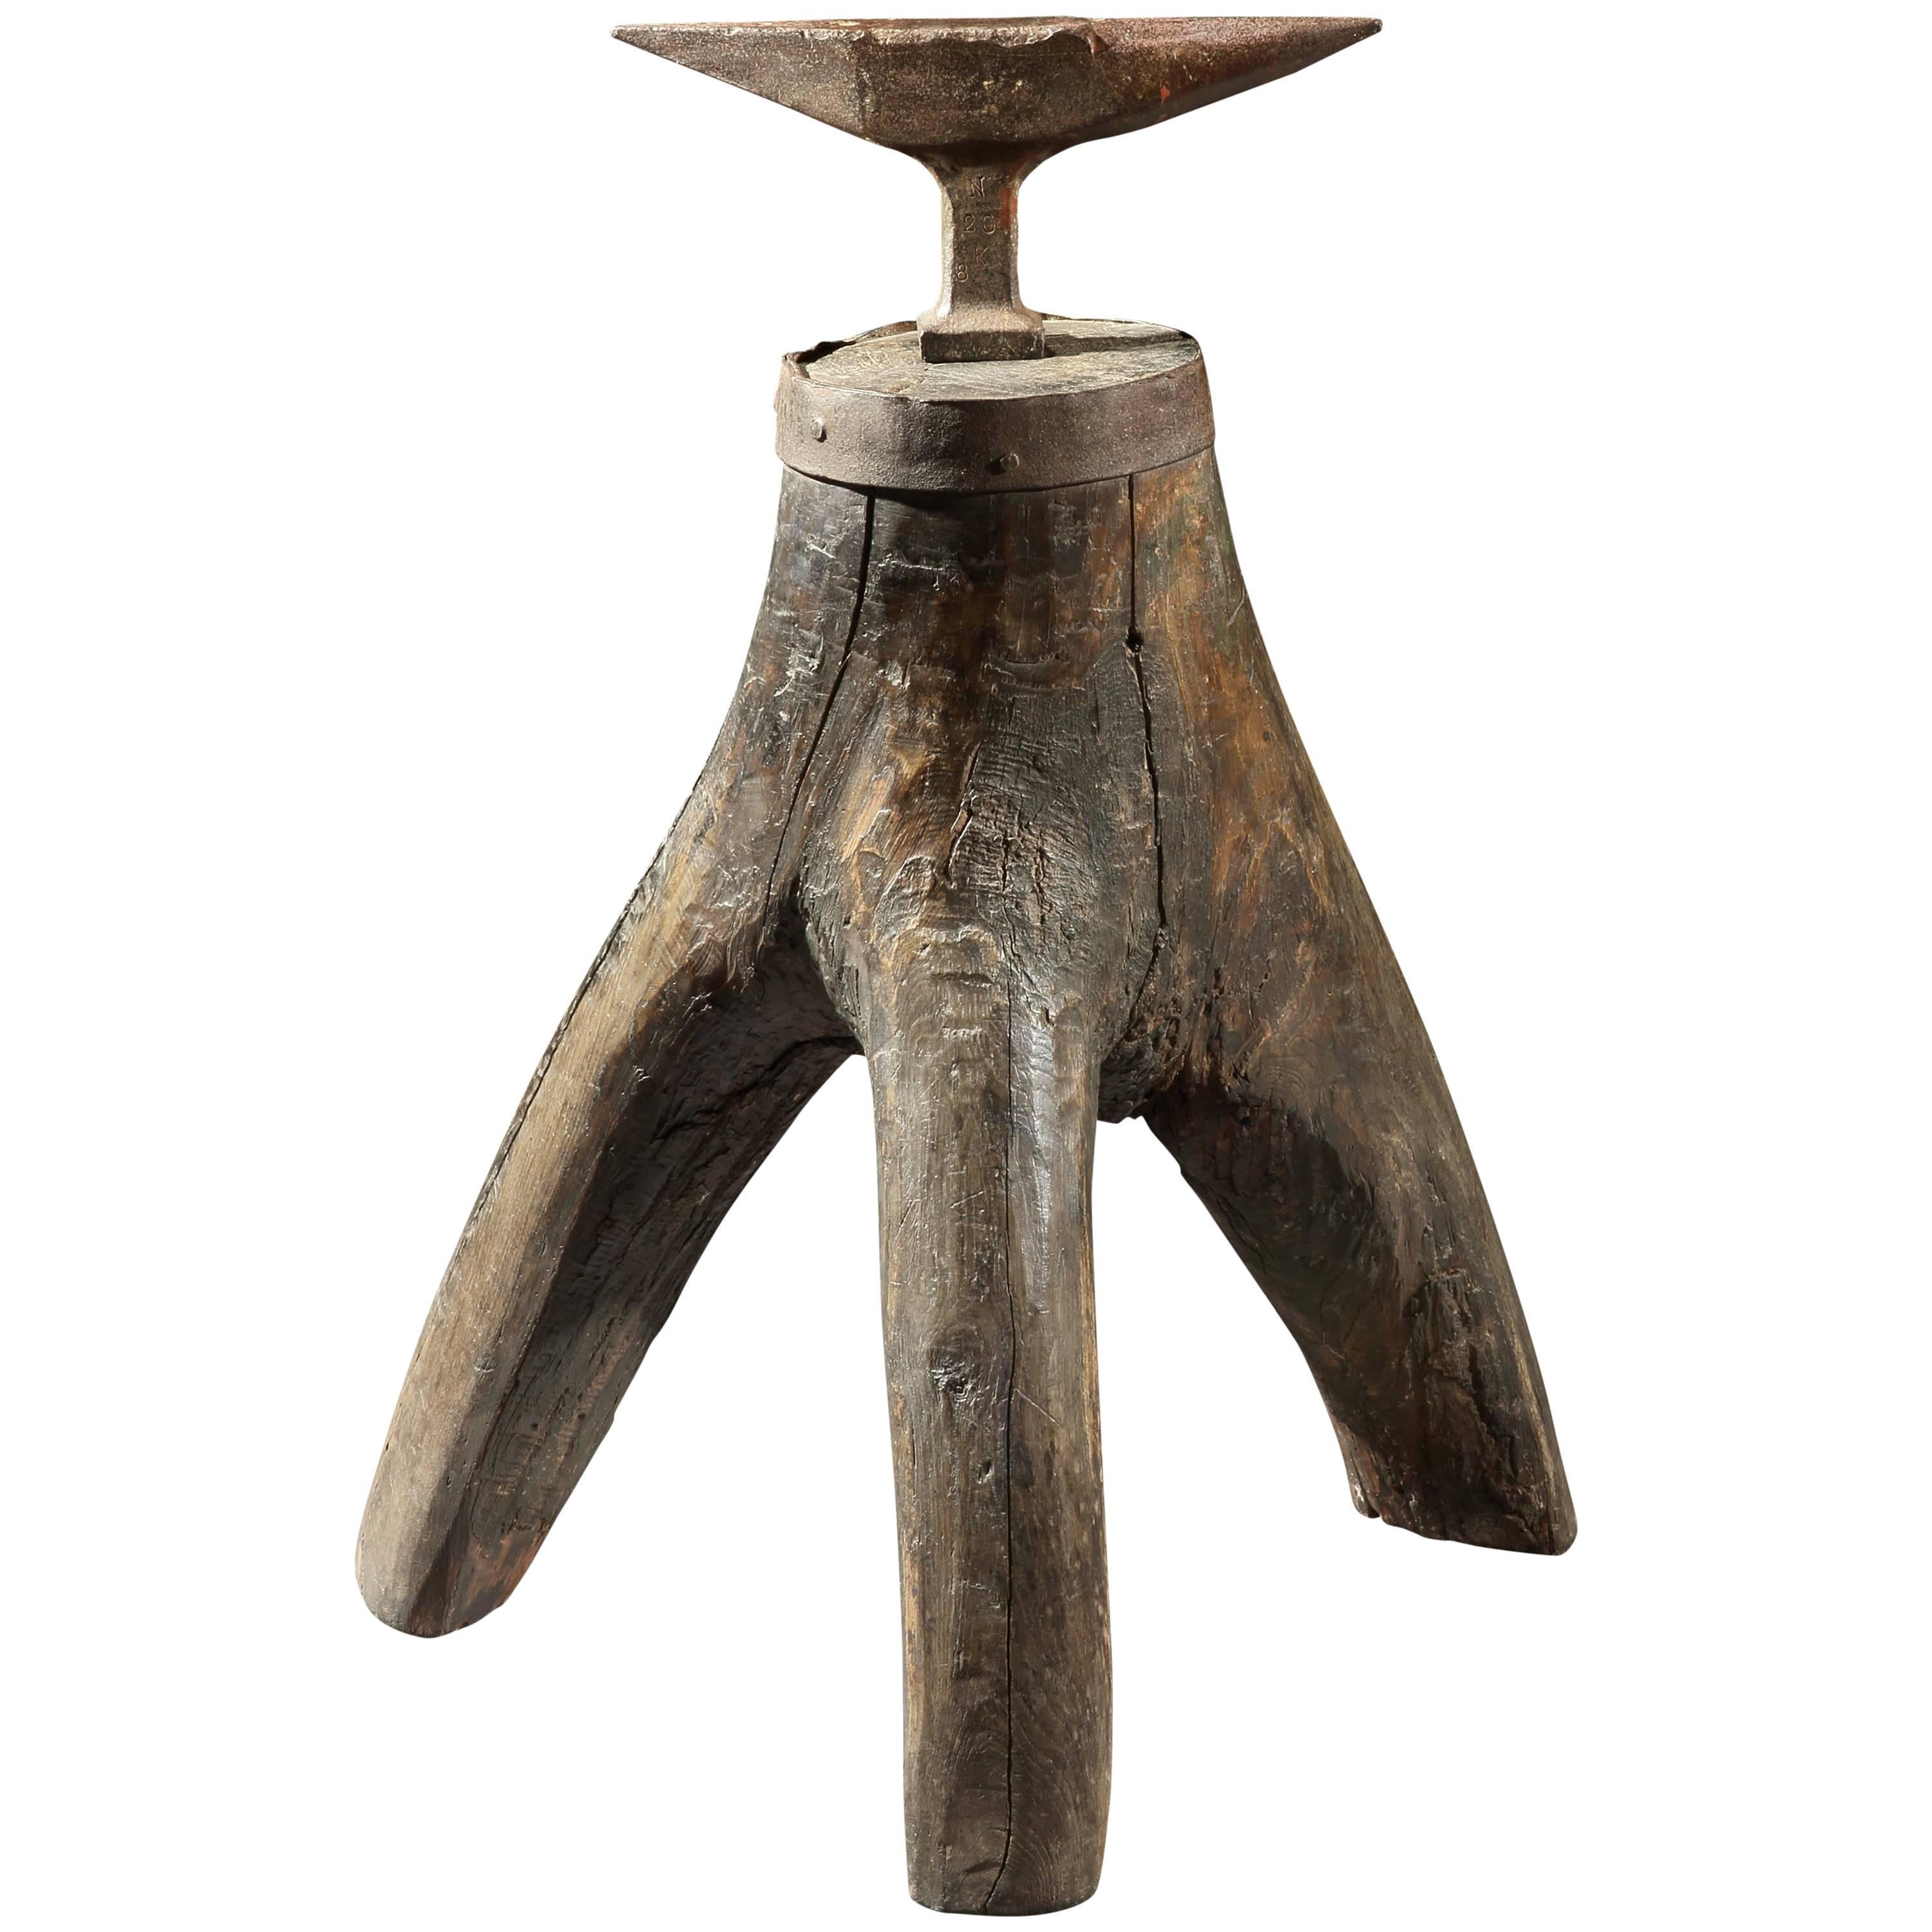 Sculptural Vernacular Blacksmith's Anvil For Sale